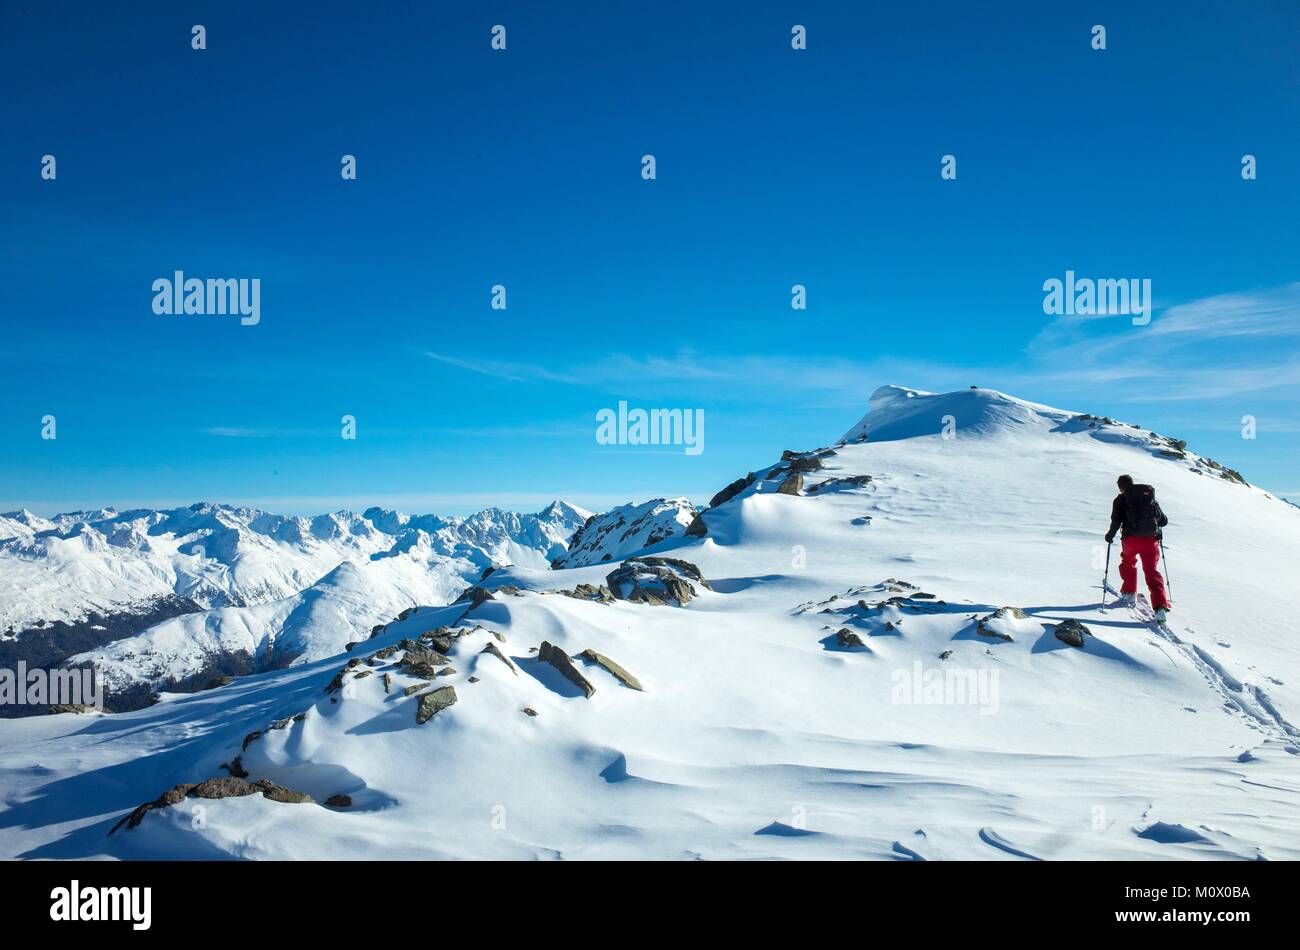 Switzerland,Graubunden,Davos,ski touring on the season's first snow on Schwarzhorn (2768 m) Stock Photo